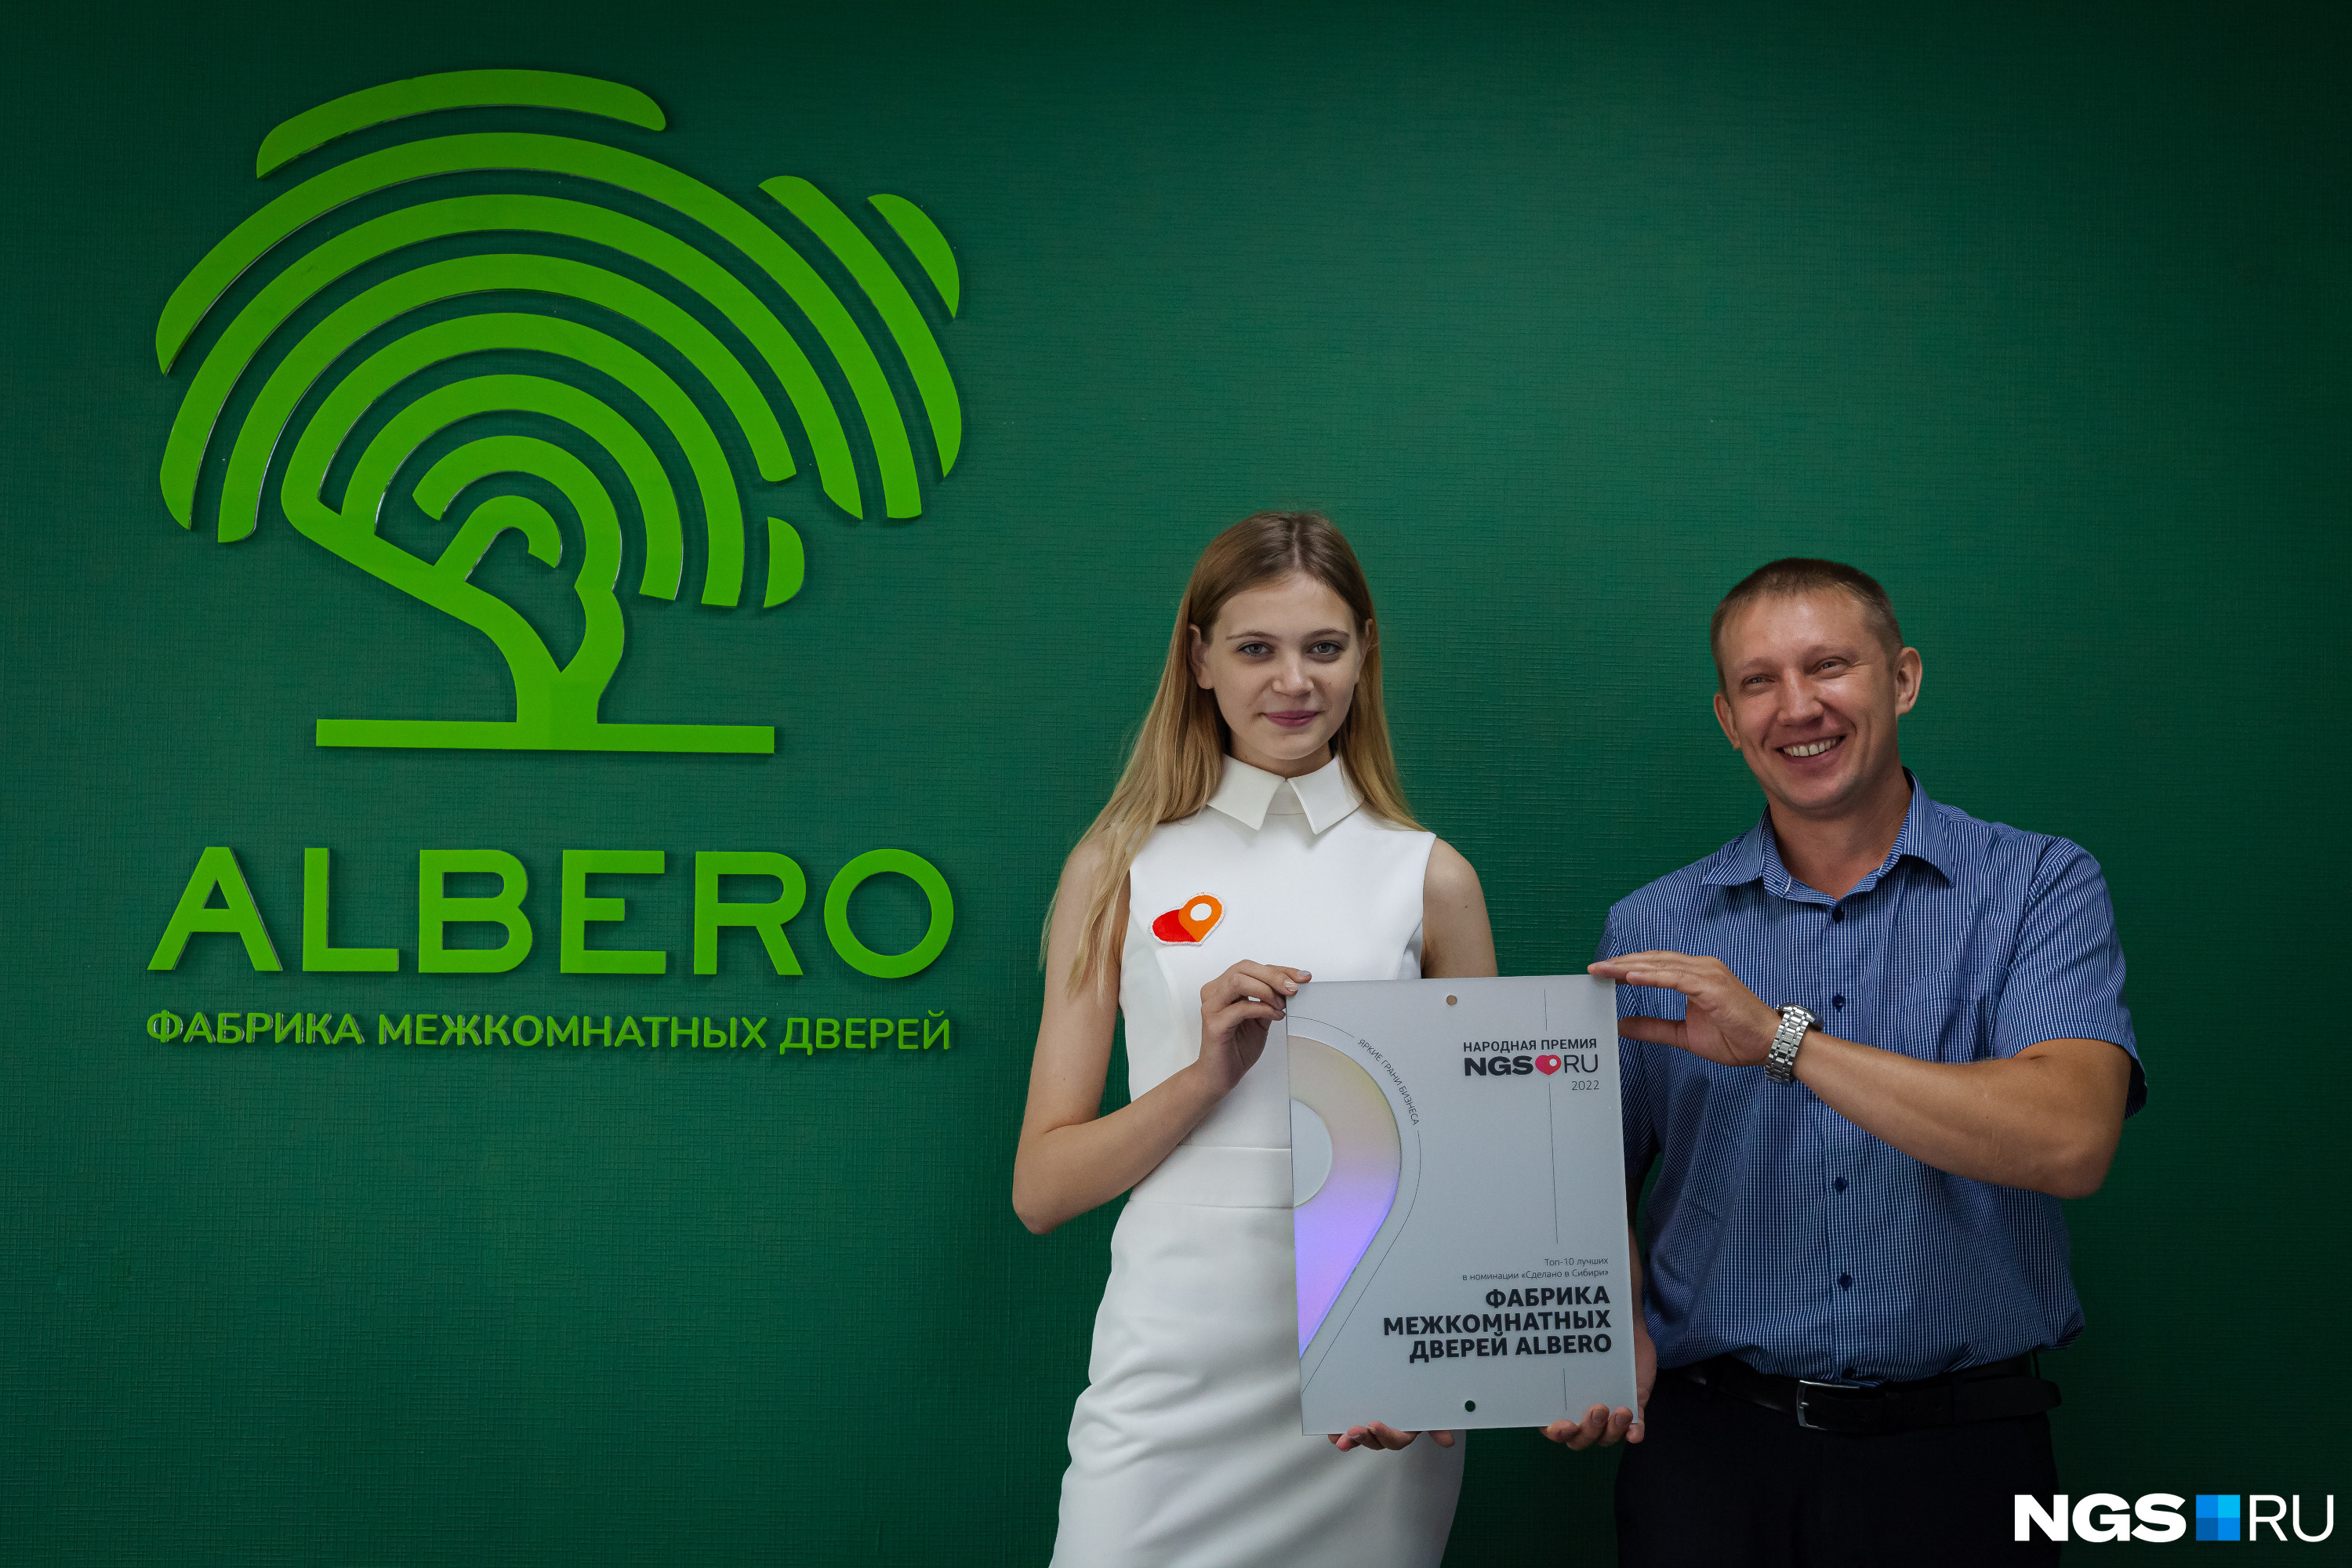 Albero — крупная производственная компания, которая профессионально занимается производством и установкой дверей